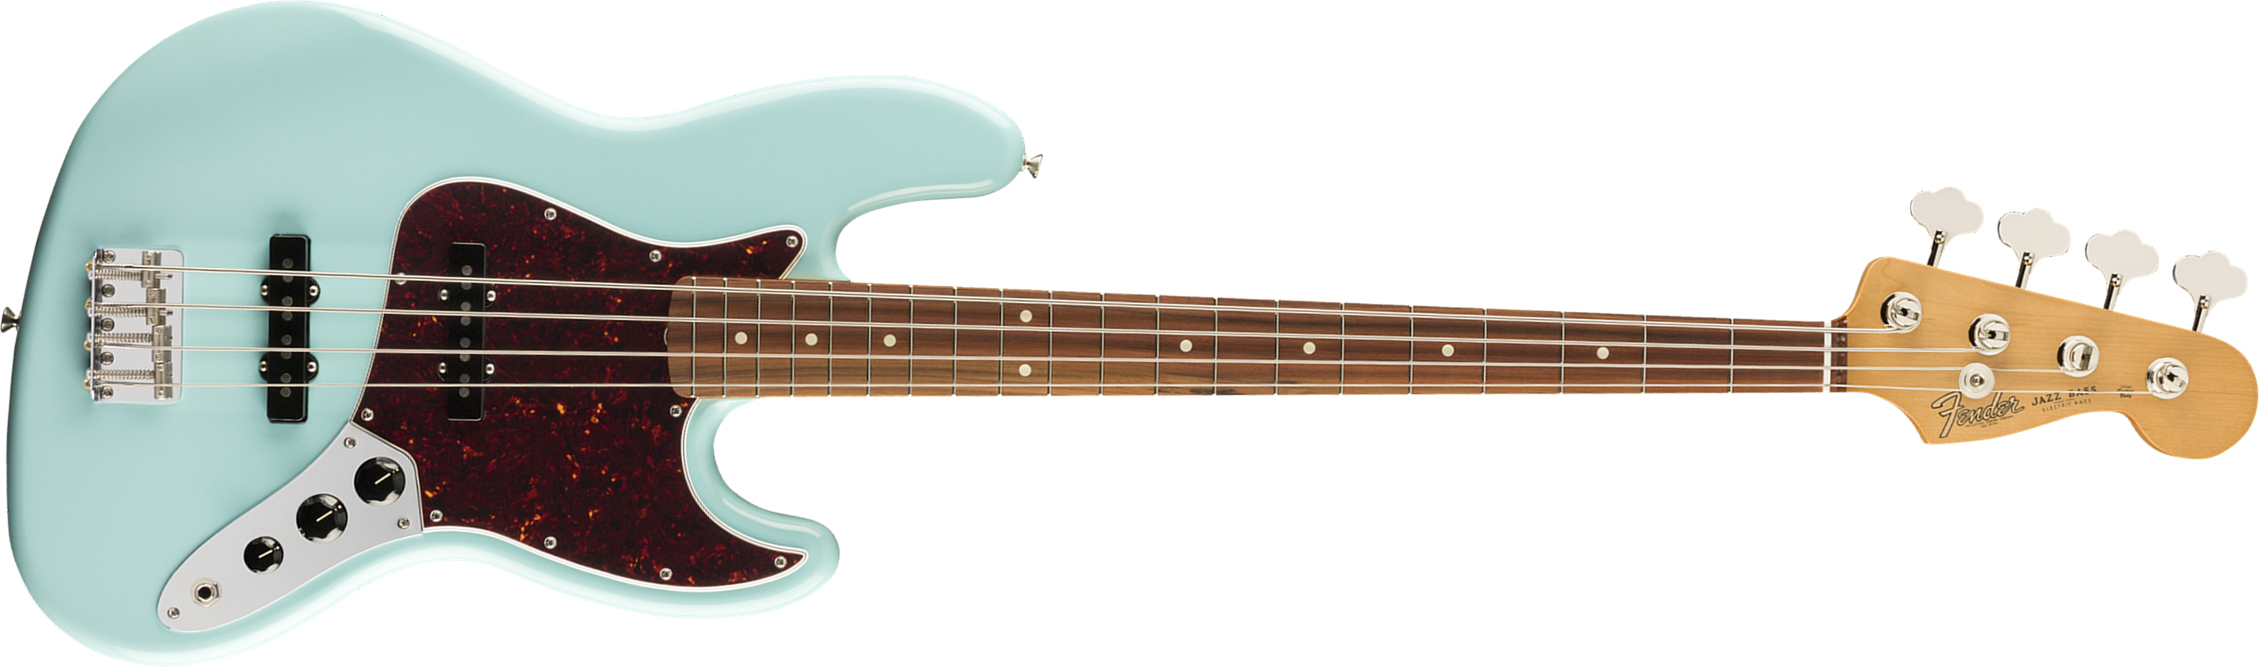 Fender Jazz Bass 60s Vintera Vintage Mex Pf - Daphne Blue - Basse Électrique Solid Body - Main picture